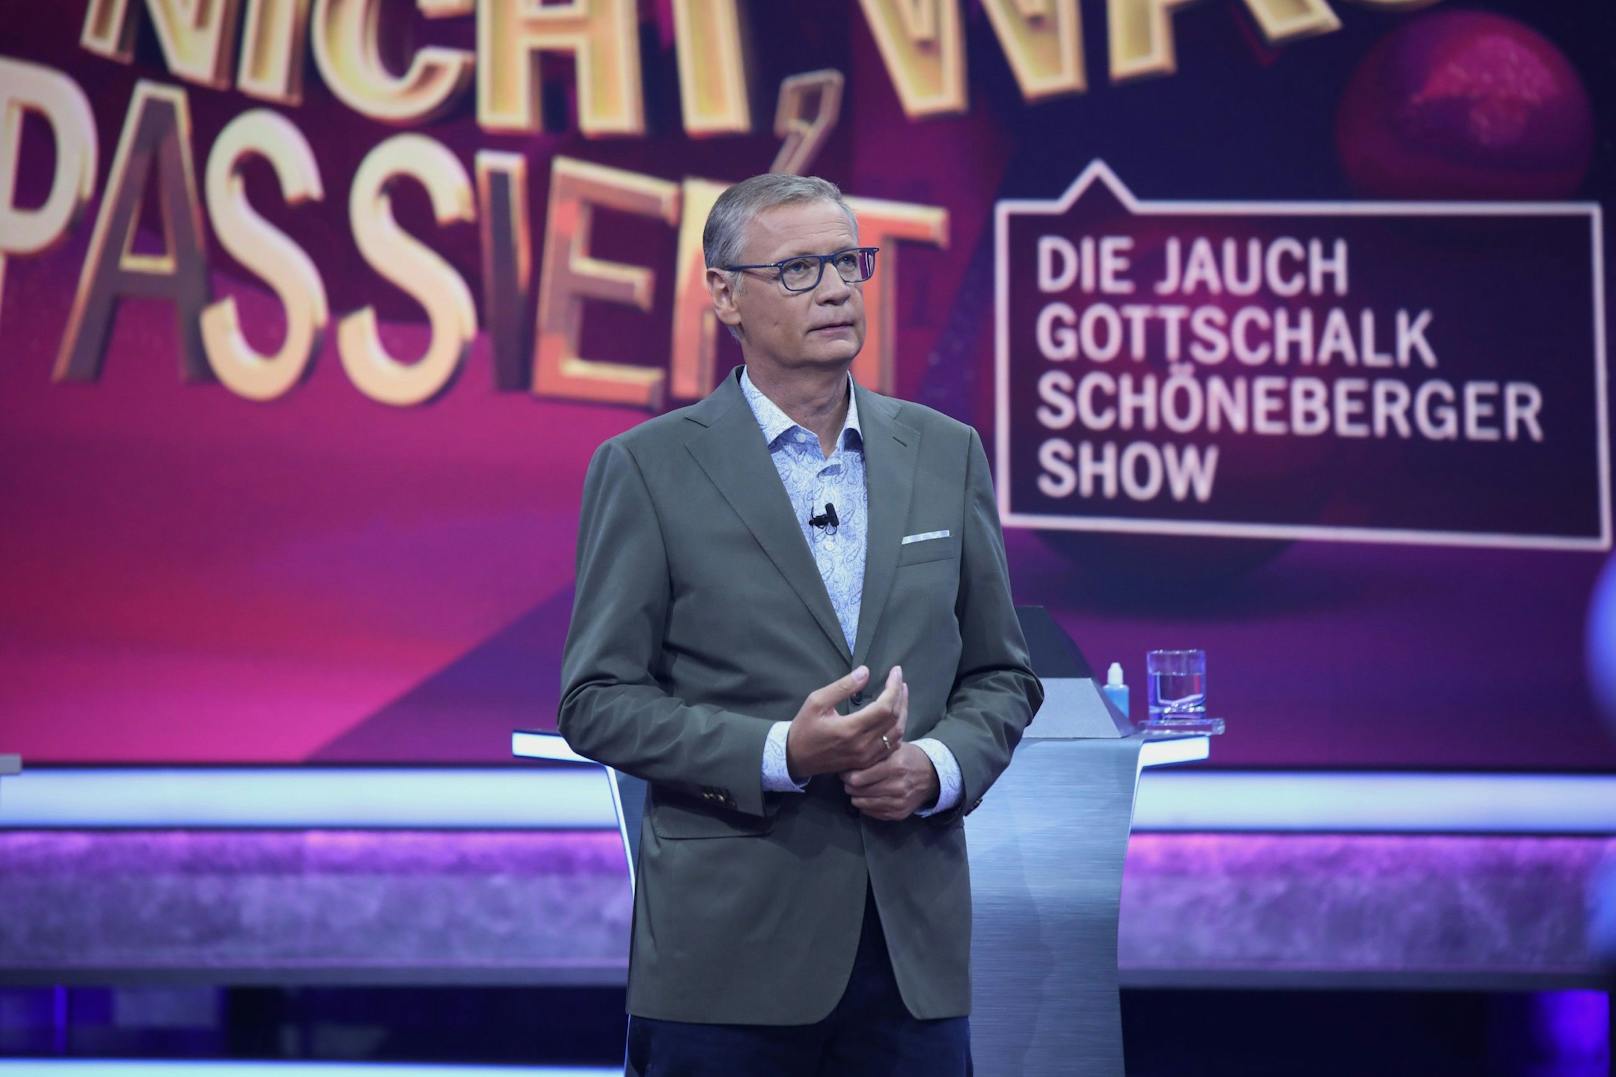 "Zu spät" – Darum durfte Günther Jauch nicht in TV-Show